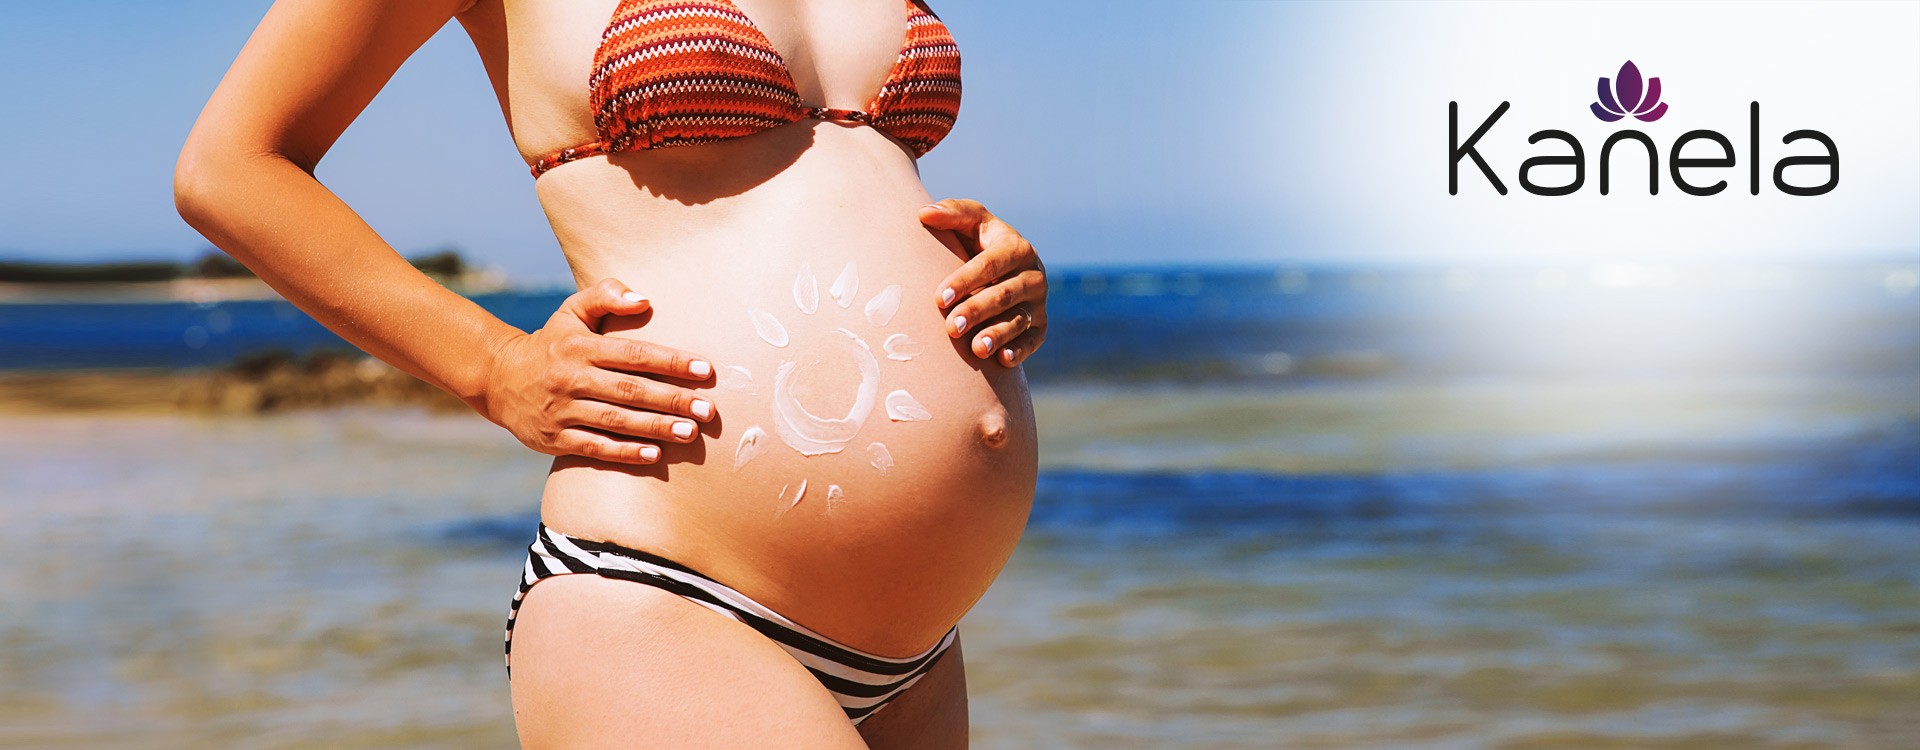 Schwanger im Sommer: so kommt man auch mit Babybauch gut durch den Sommer